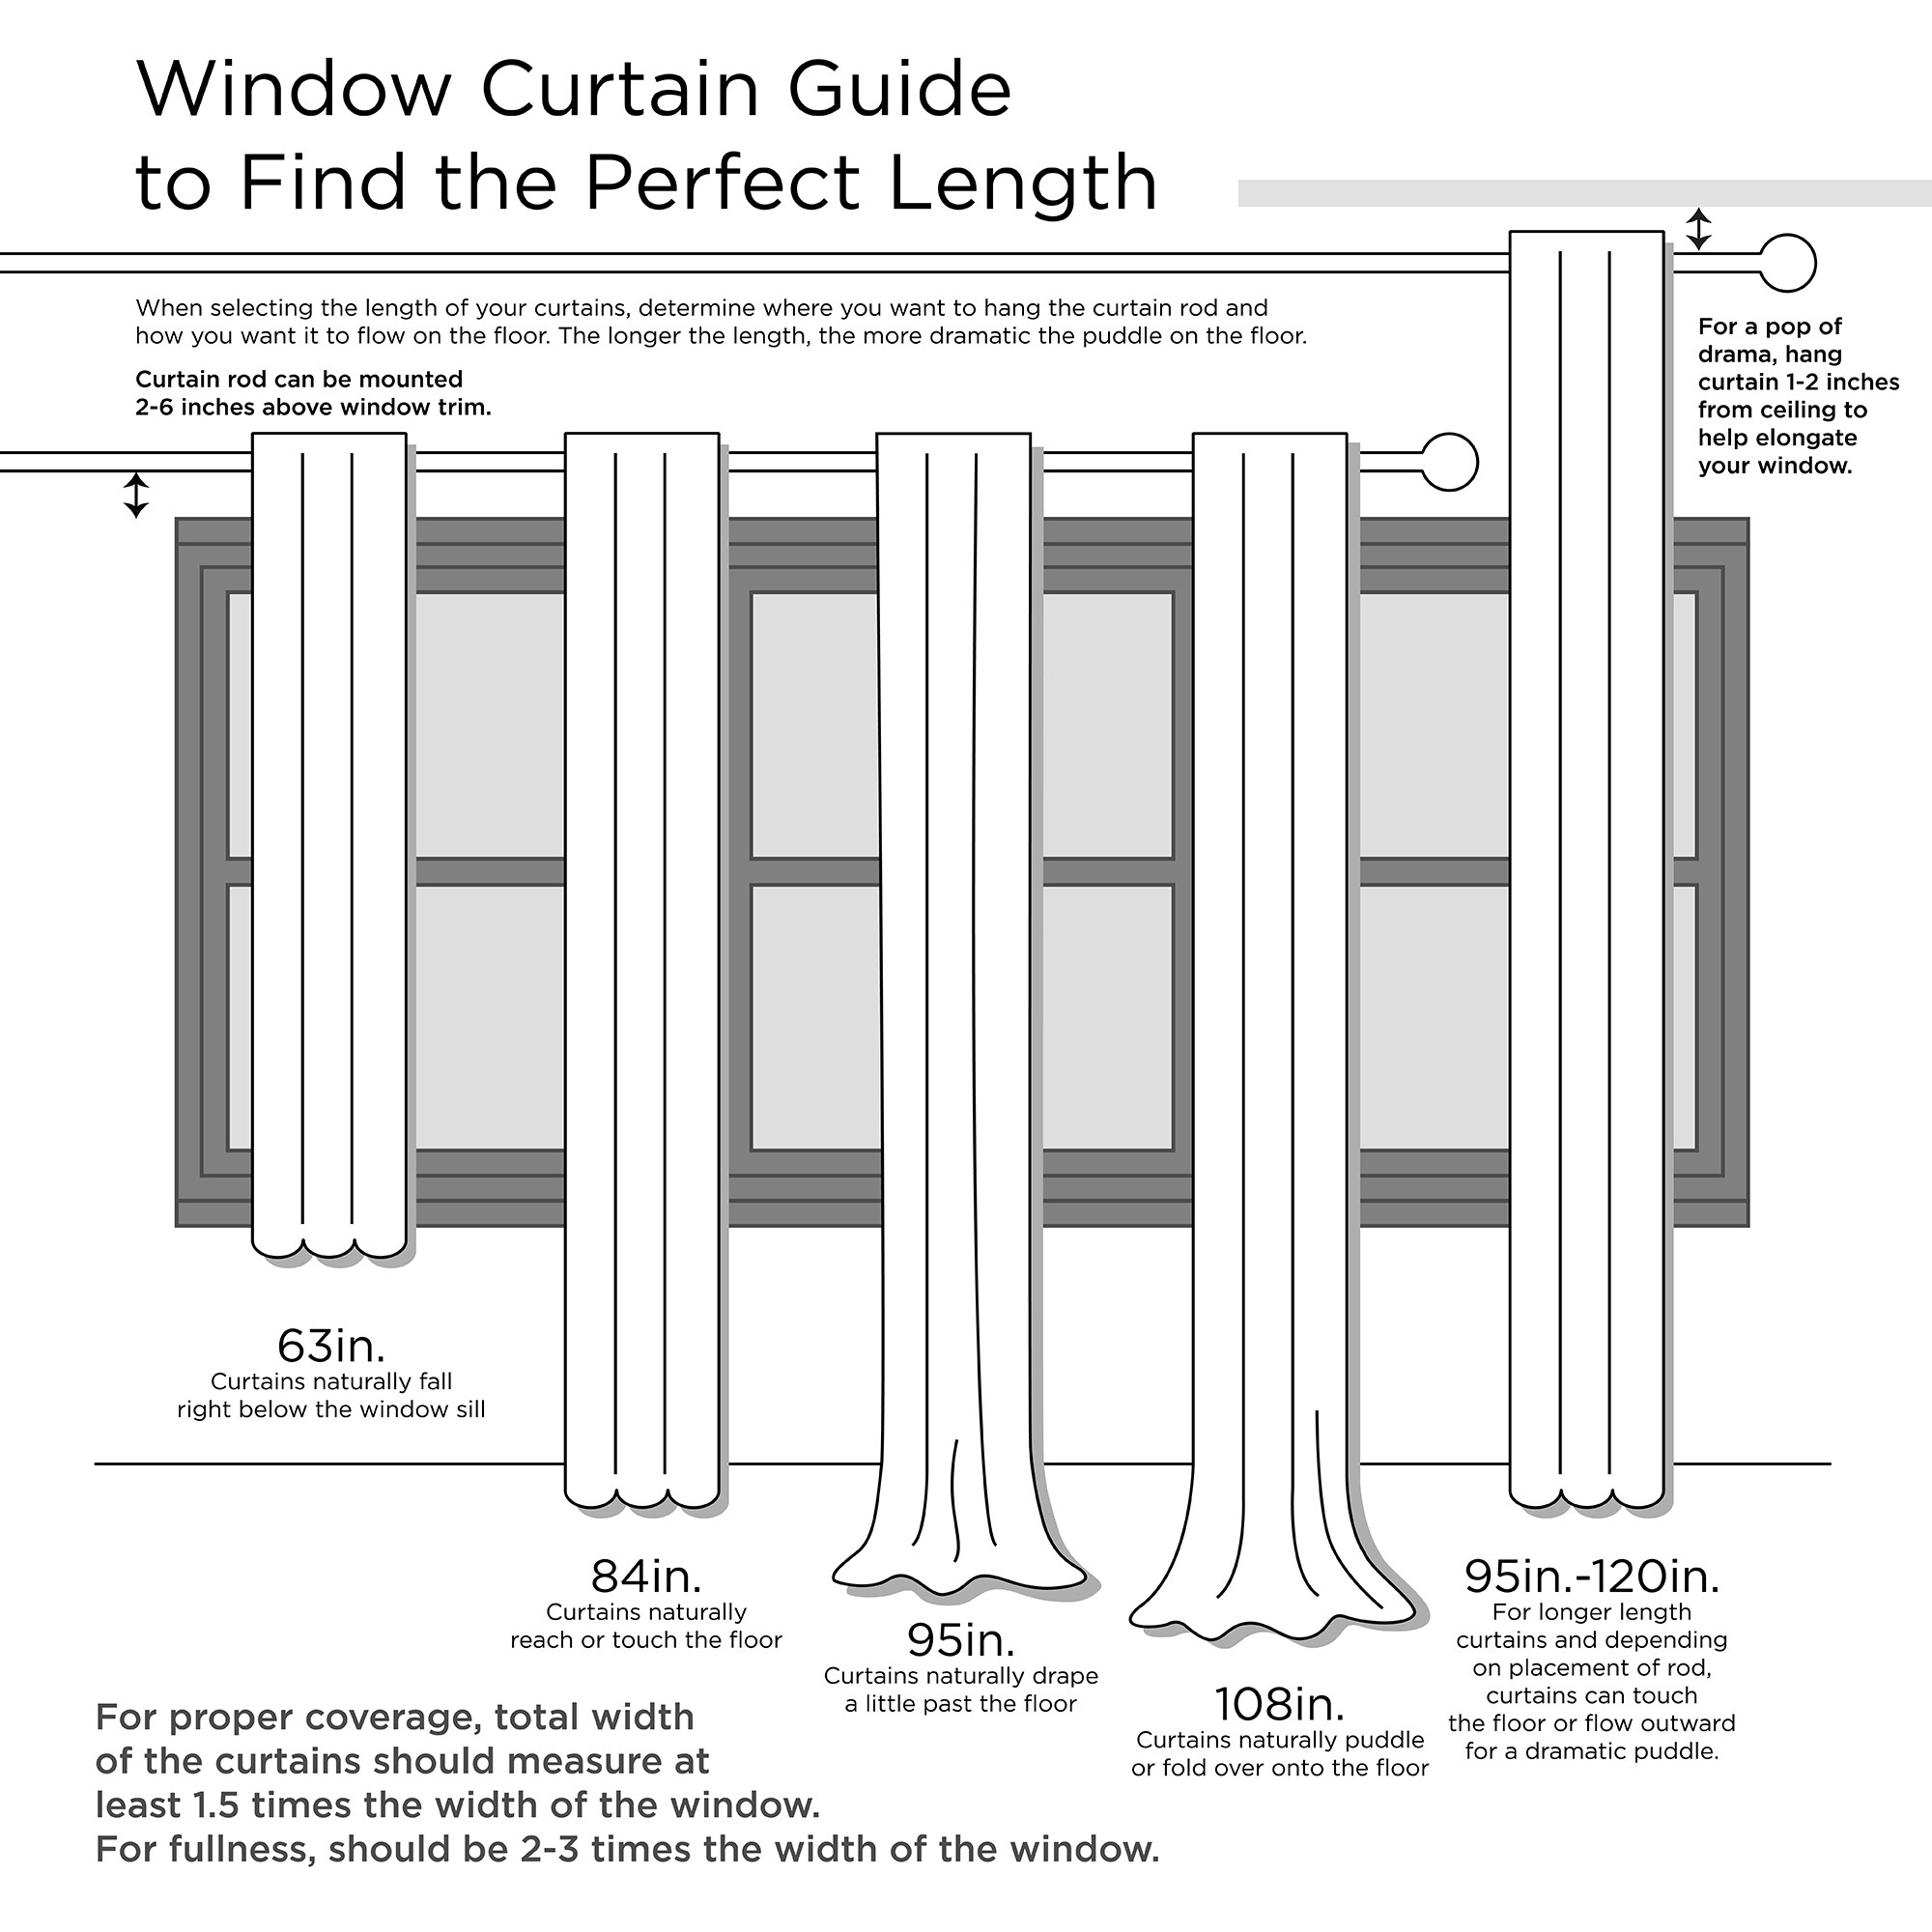 Darien Solid Indoor/Outdoor Sheer Velcro Tab Top Window Curtain